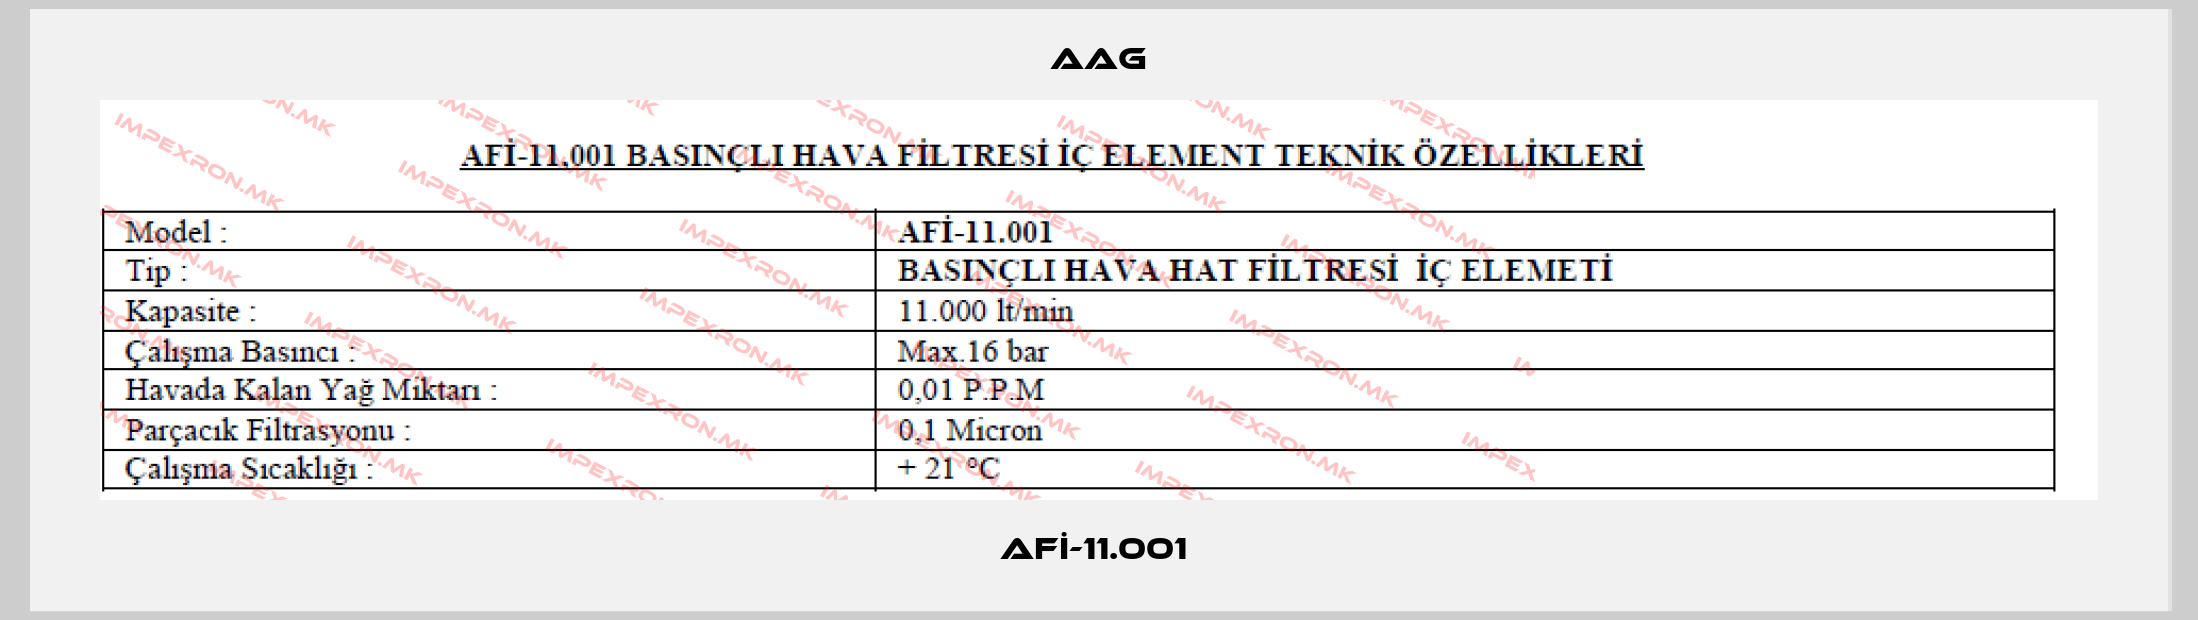 Aag-AFİ-11.001 price